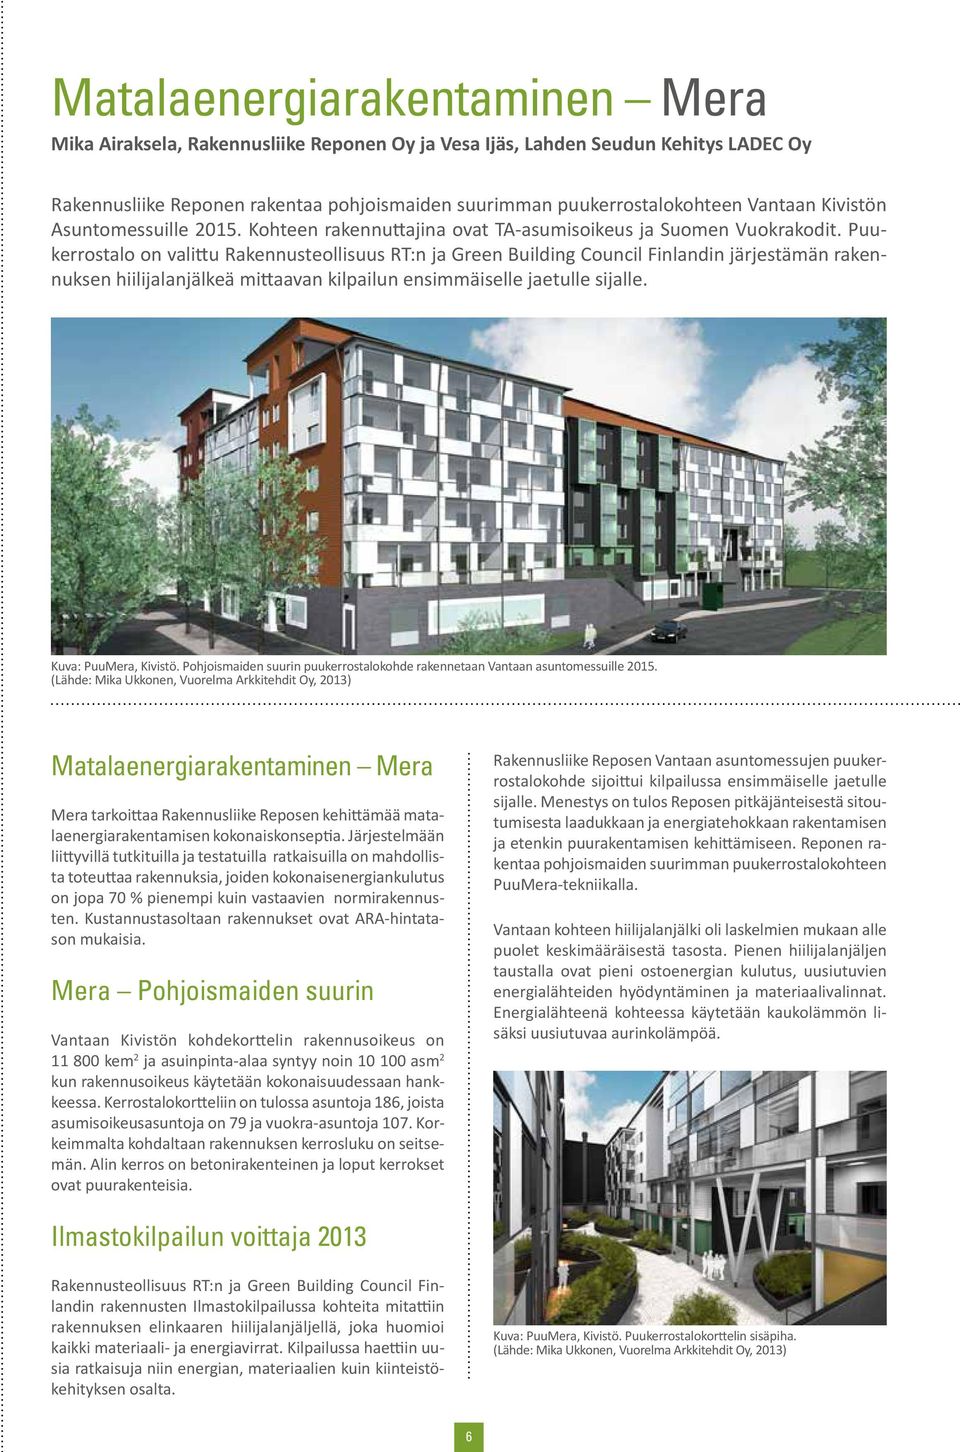 Puukerrostalo on valittu Rakennusteollisuus RT:n ja Green Building Council Finlandin järjestämän rakennuksen hiilijalanjälkeä mittaavan kilpailun ensimmäiselle jaetulle sijalle.